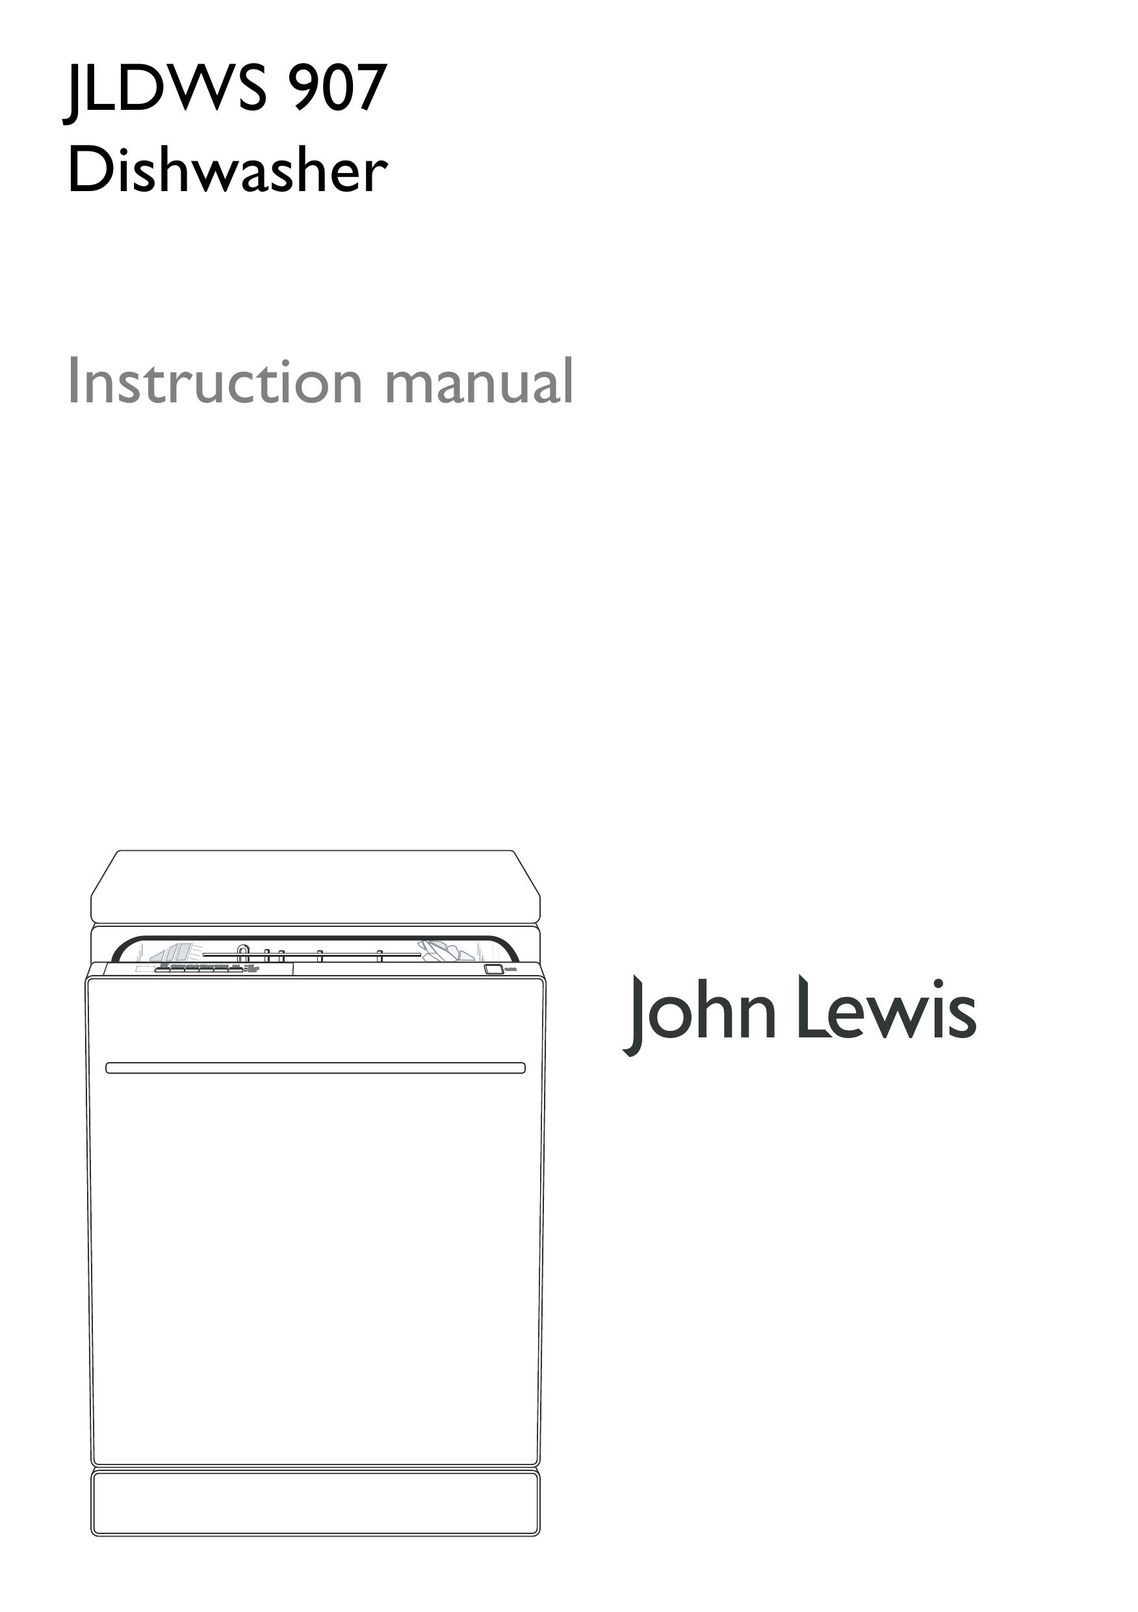 John Lewis JLDWS 907 Dishwasher User Manual